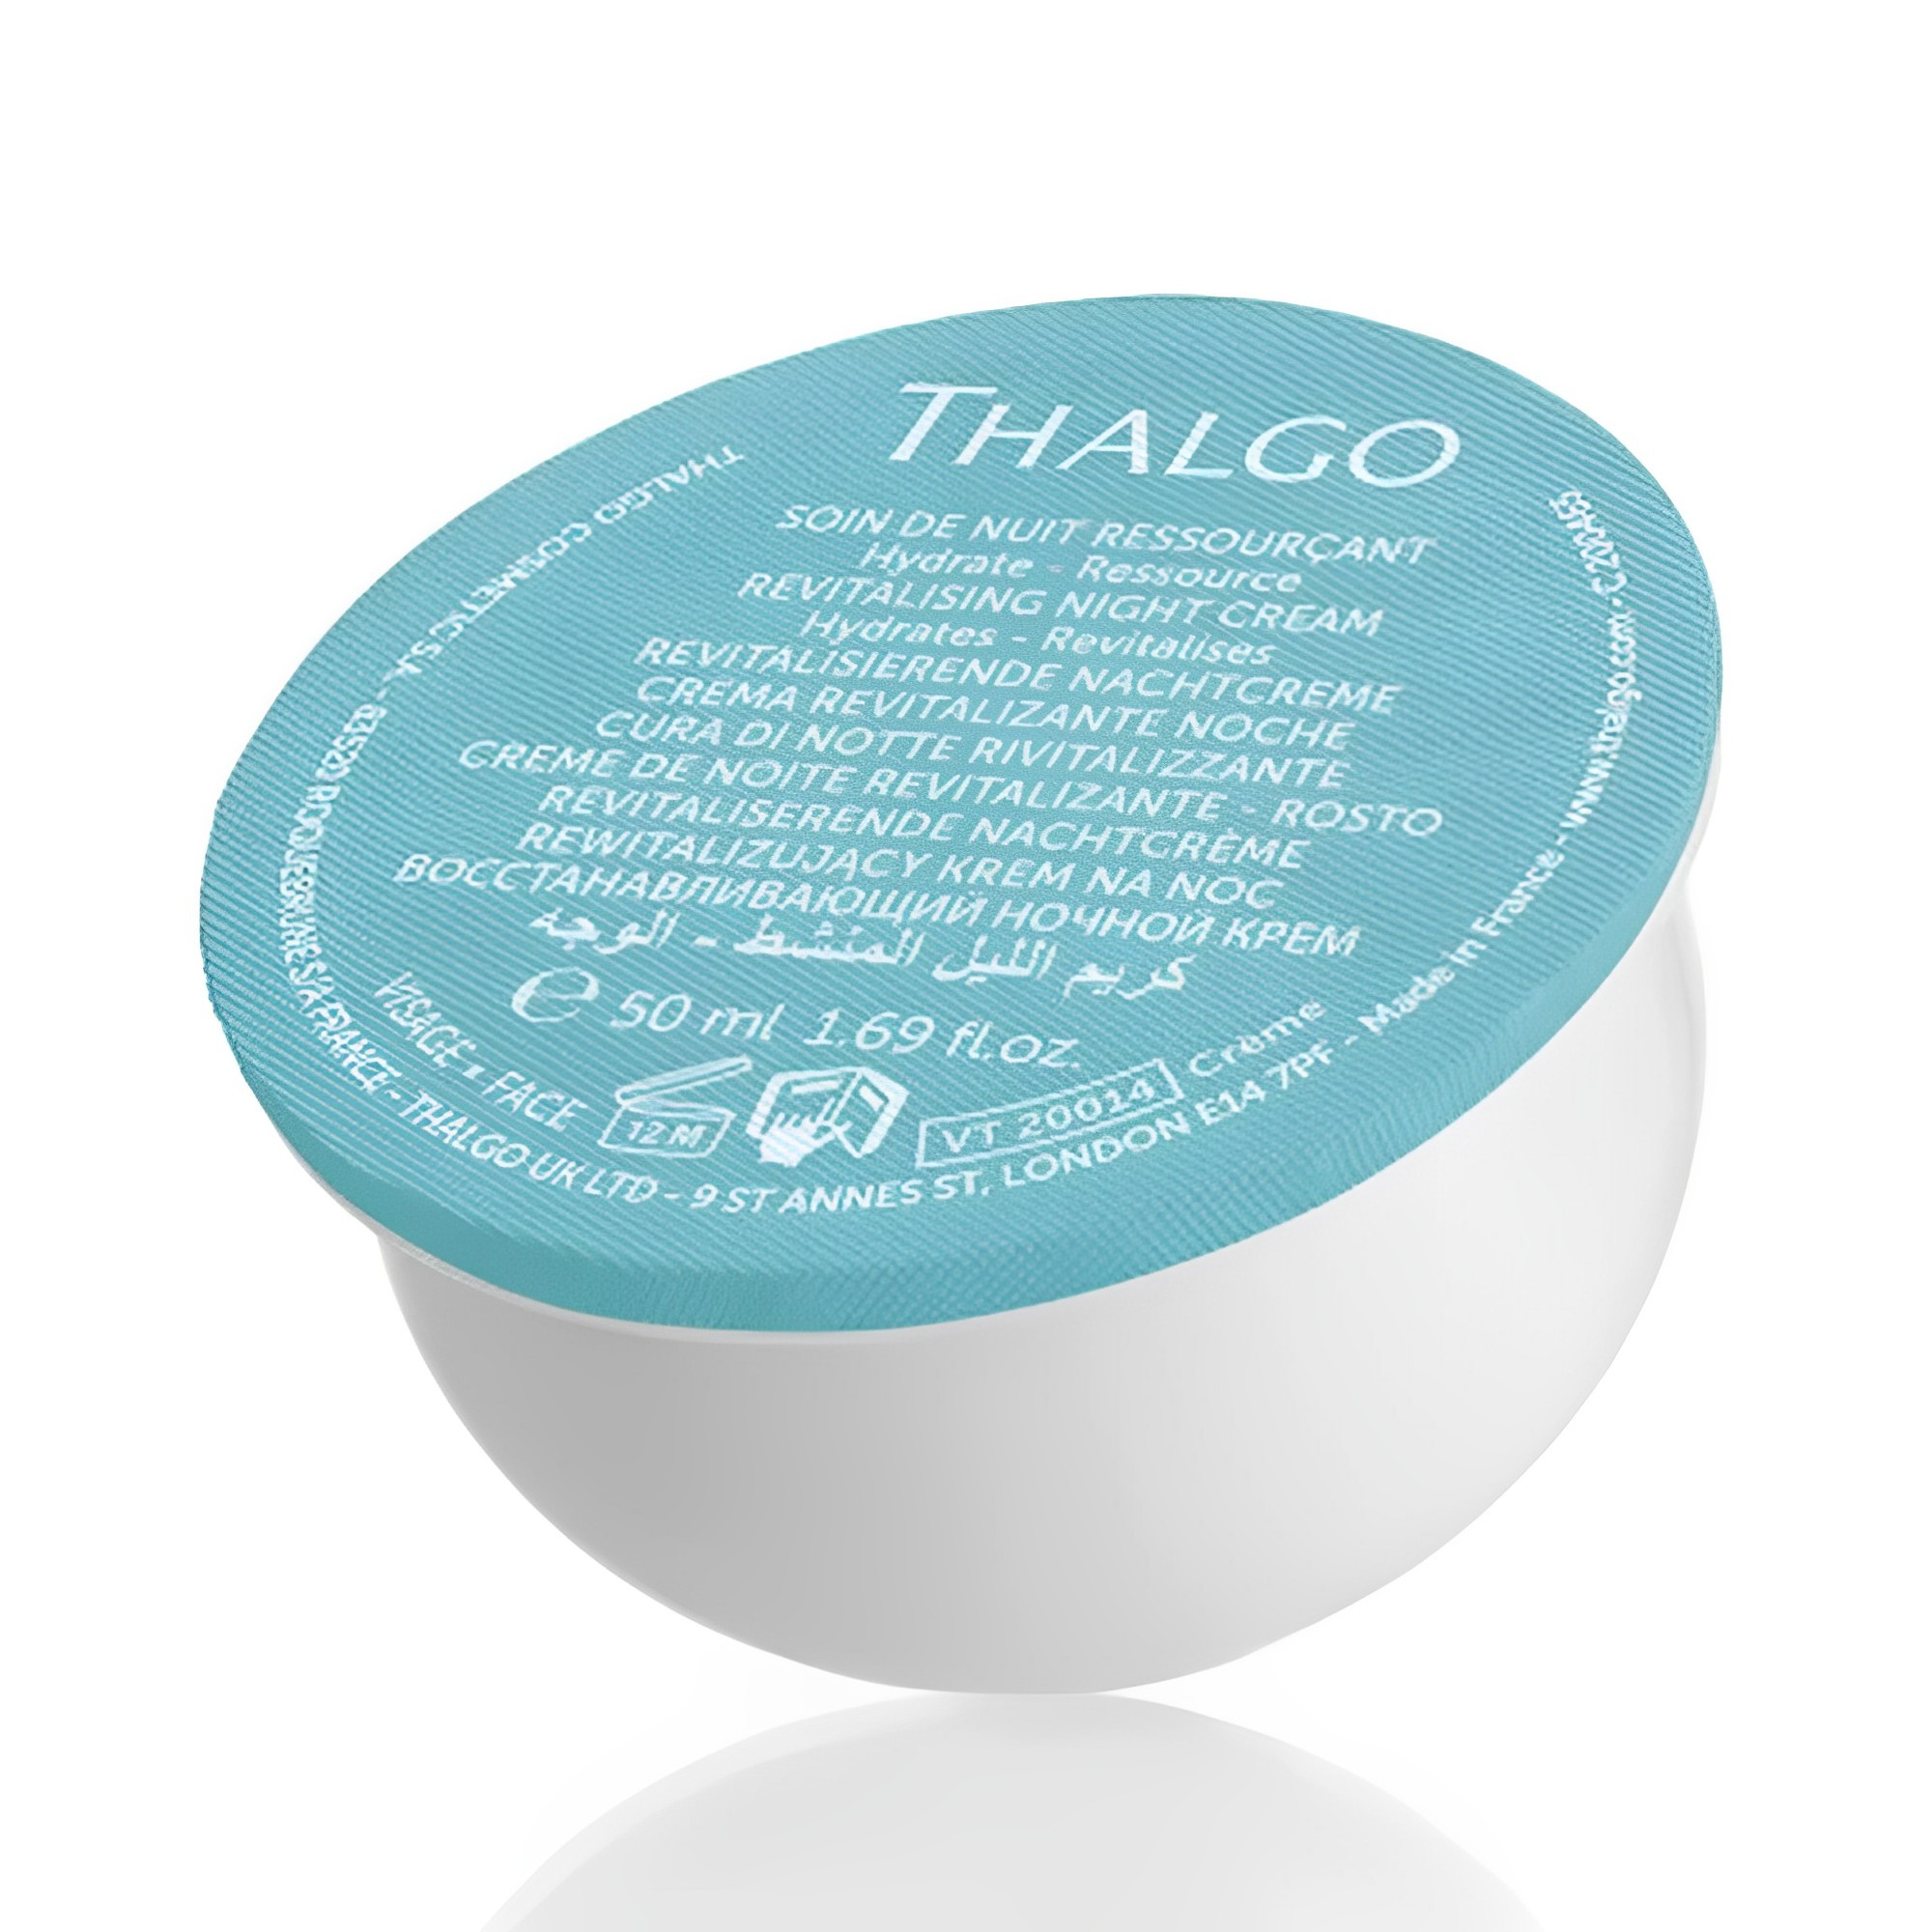 Зволожуючий нічний крем Thalgo Revitalising Night Cream